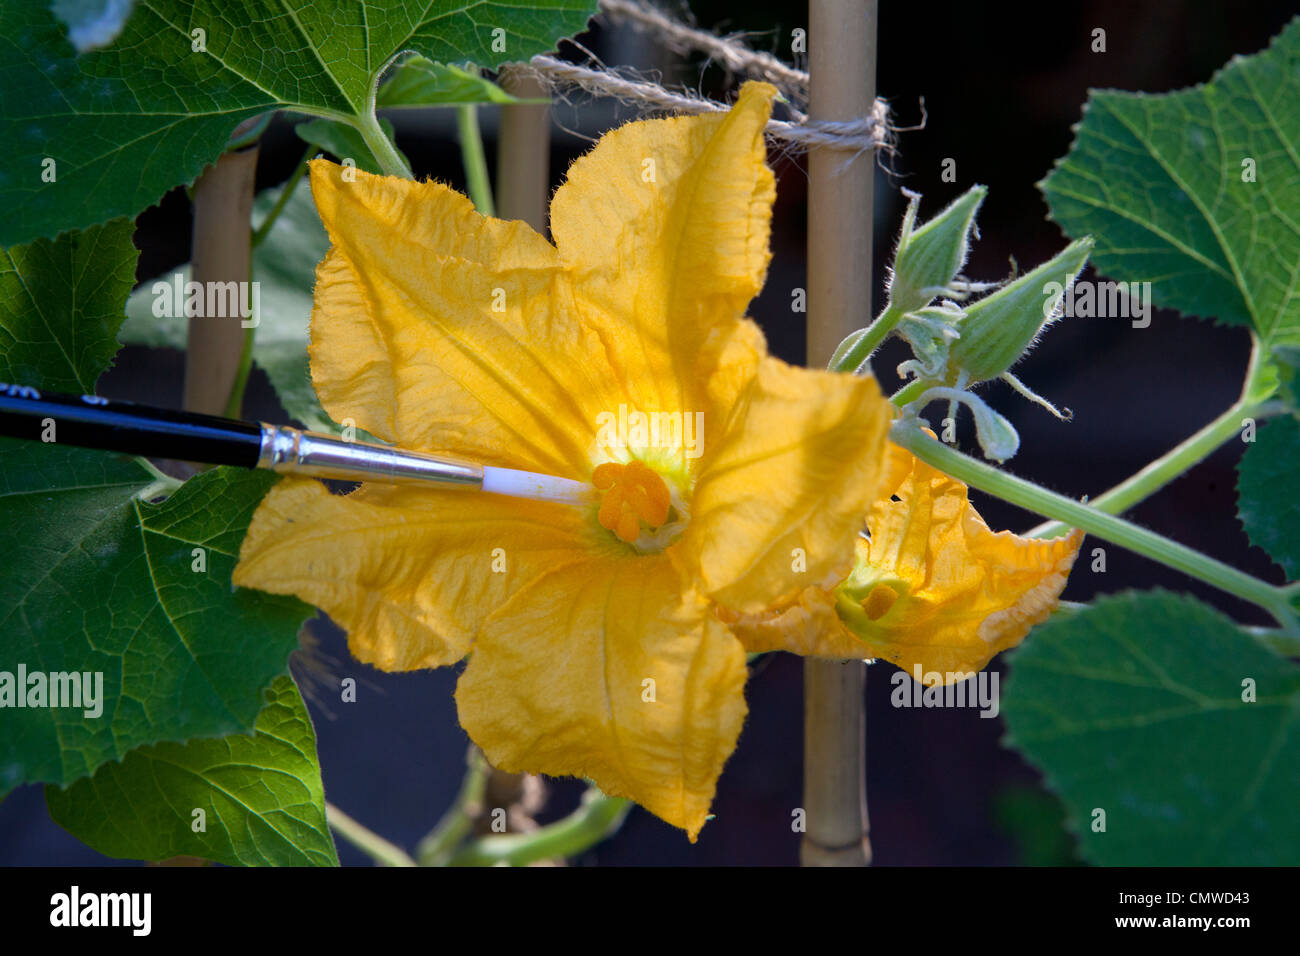 Impollinazione mano della femmina di fiori di zucca con il polline dal fiore maschio utilizzando un pennello. Immagine mostra sia il maschio che la femmina fiori Foto Stock